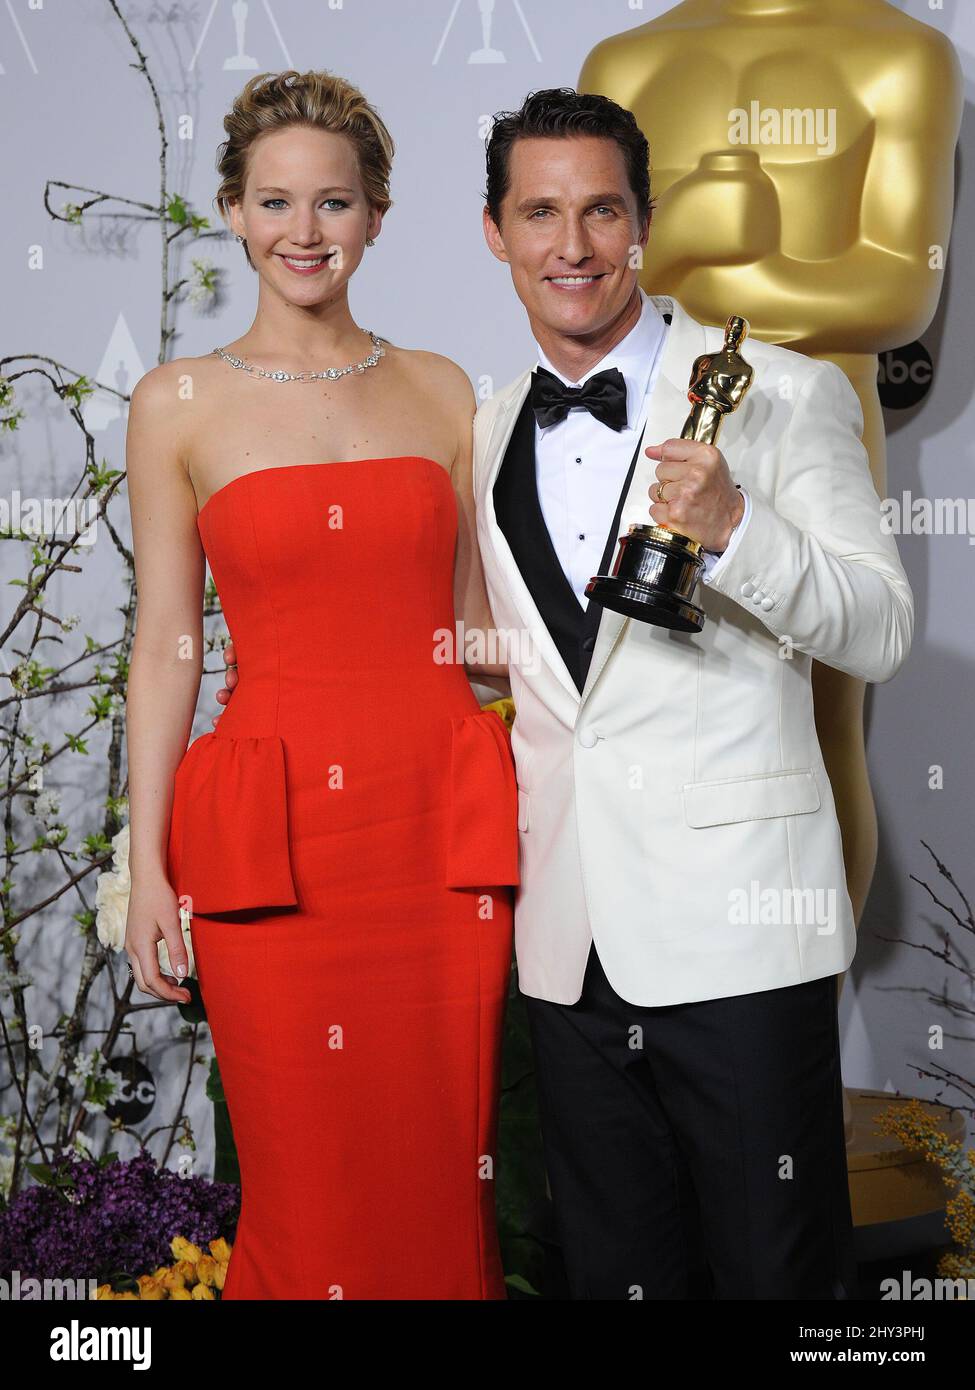 Matthew McConaughey, rechts, Gewinner des Preises für den besten Schauspieler für seine Rolle in den „Dallas Buyers Club“-Posen mit Jennifer Lawrence im Presseraum während der Oscars im Dolby Theater am Sonntag, dem 2. März 2014, in Los Angeles. Stockfoto